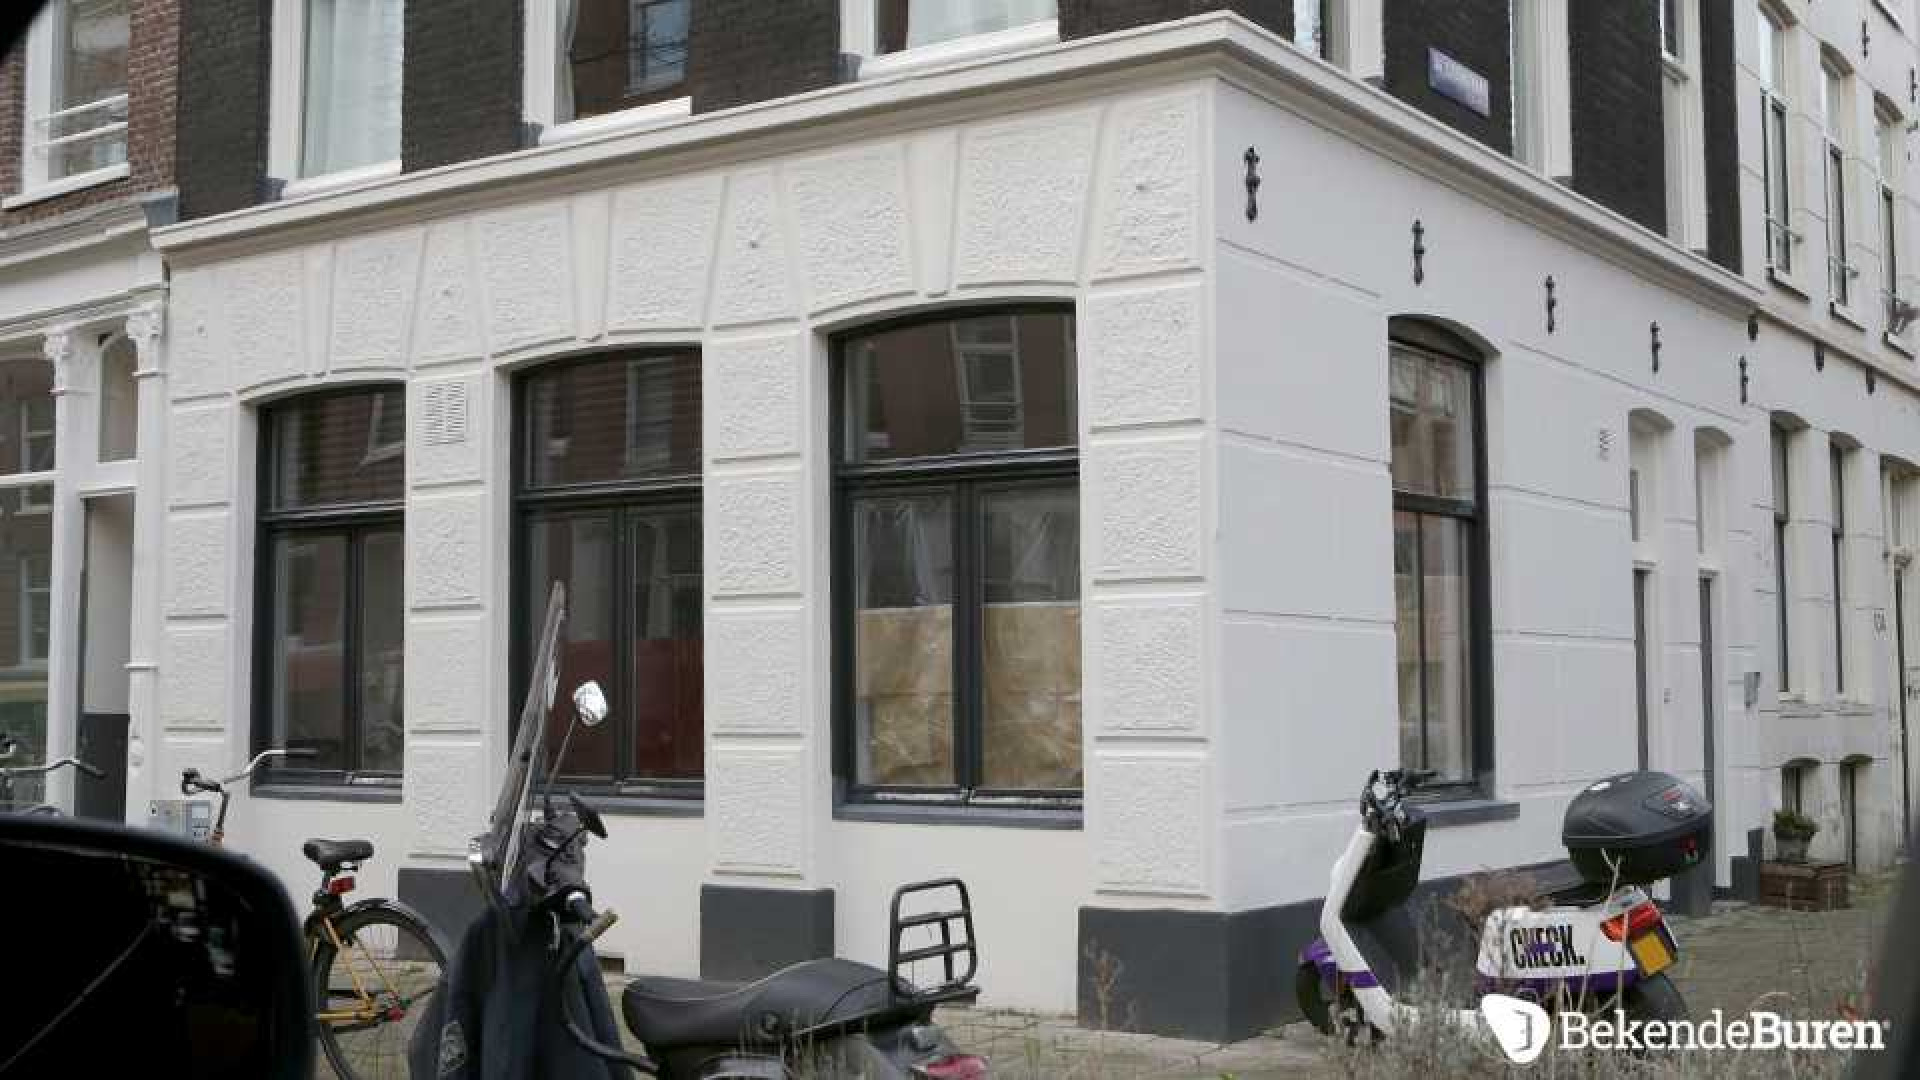 Freek van Noortwijk, ex van Katja Schuurman, druk bezig met het opknappen van zijn woning. Zie foto's 2